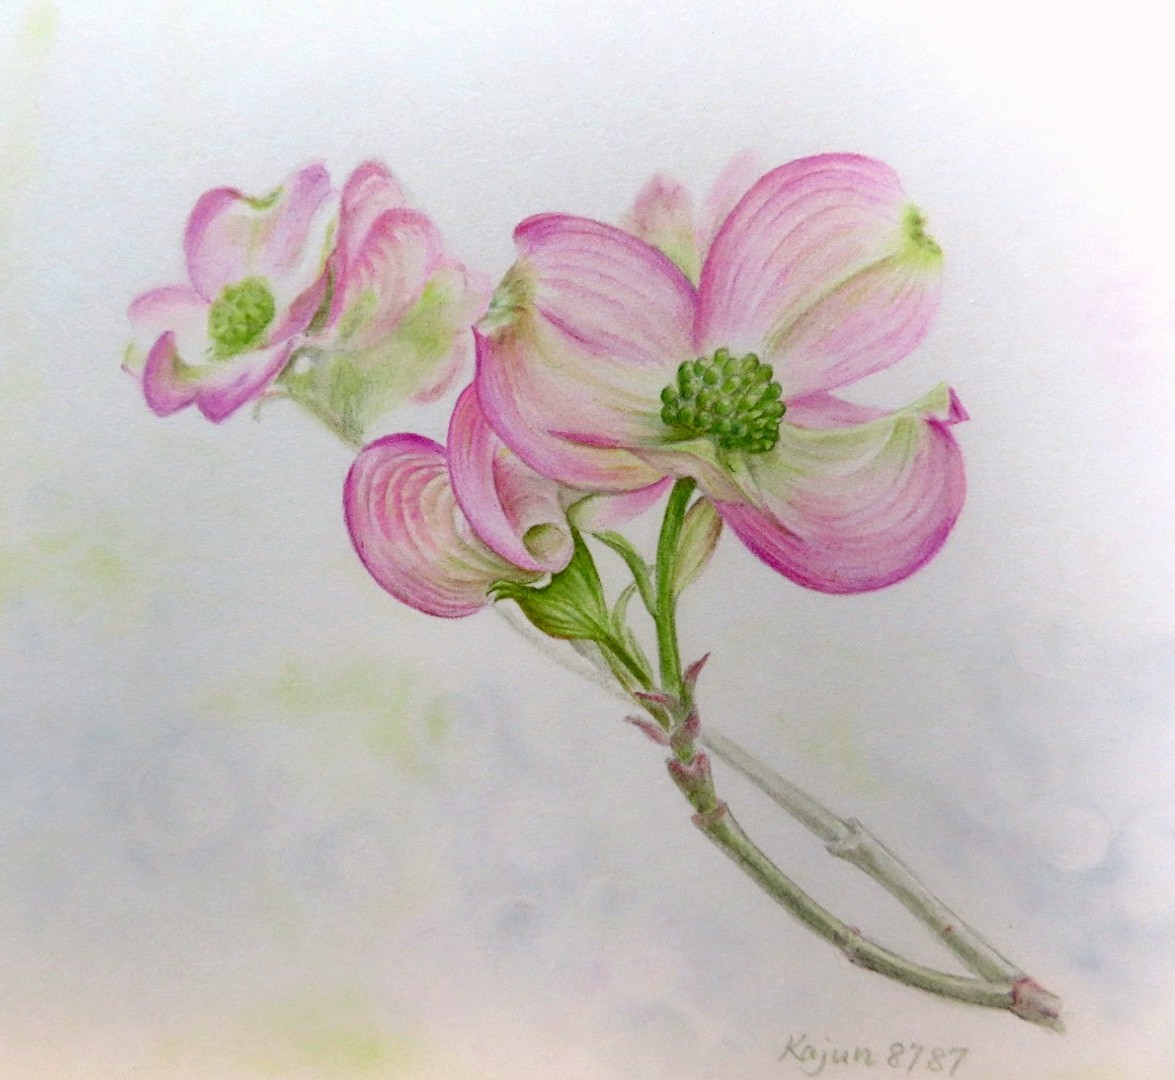 Kajun Twitter પર ハナミズキの色鉛筆画です 色も花の姿も可愛らしい花木です 色鉛筆画 色鉛筆イラスト ハナミズキ T Co Aw7pqby0z7 Twitter